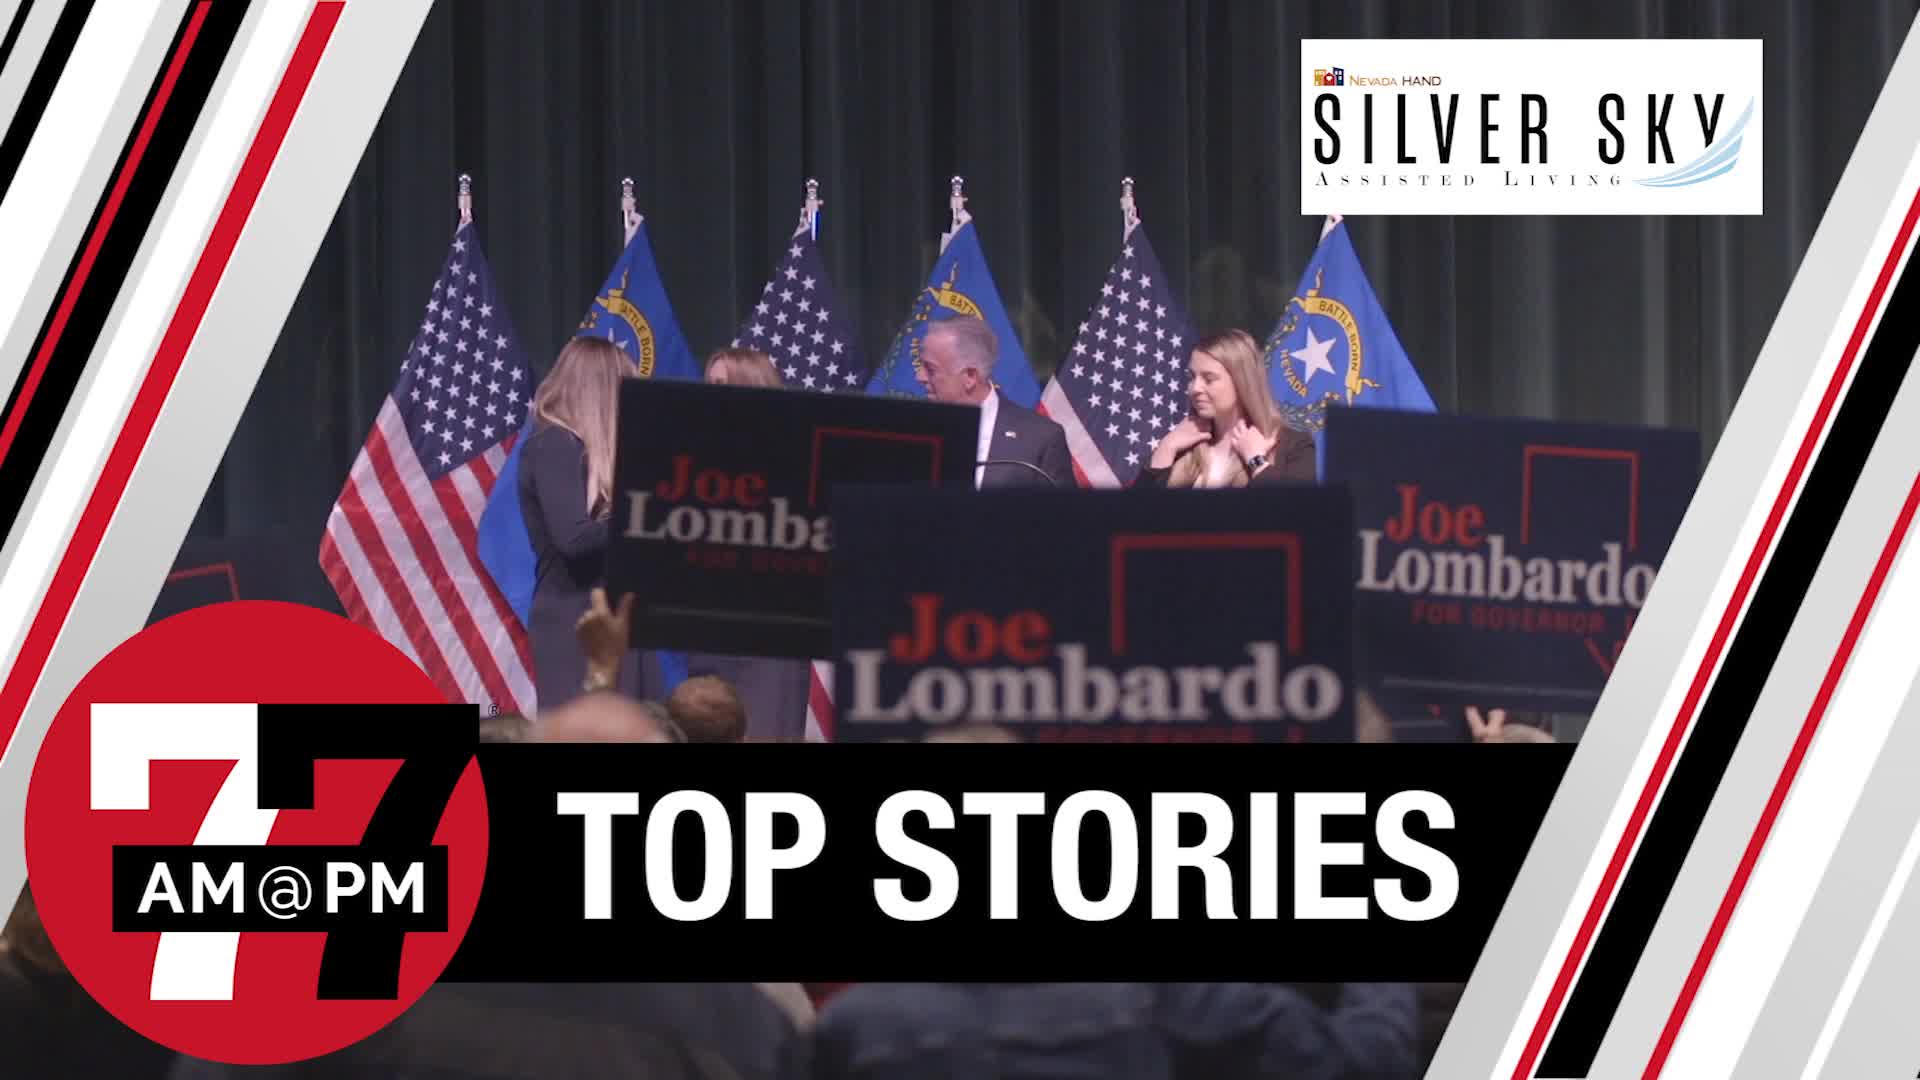 Lombardo gives victory speech